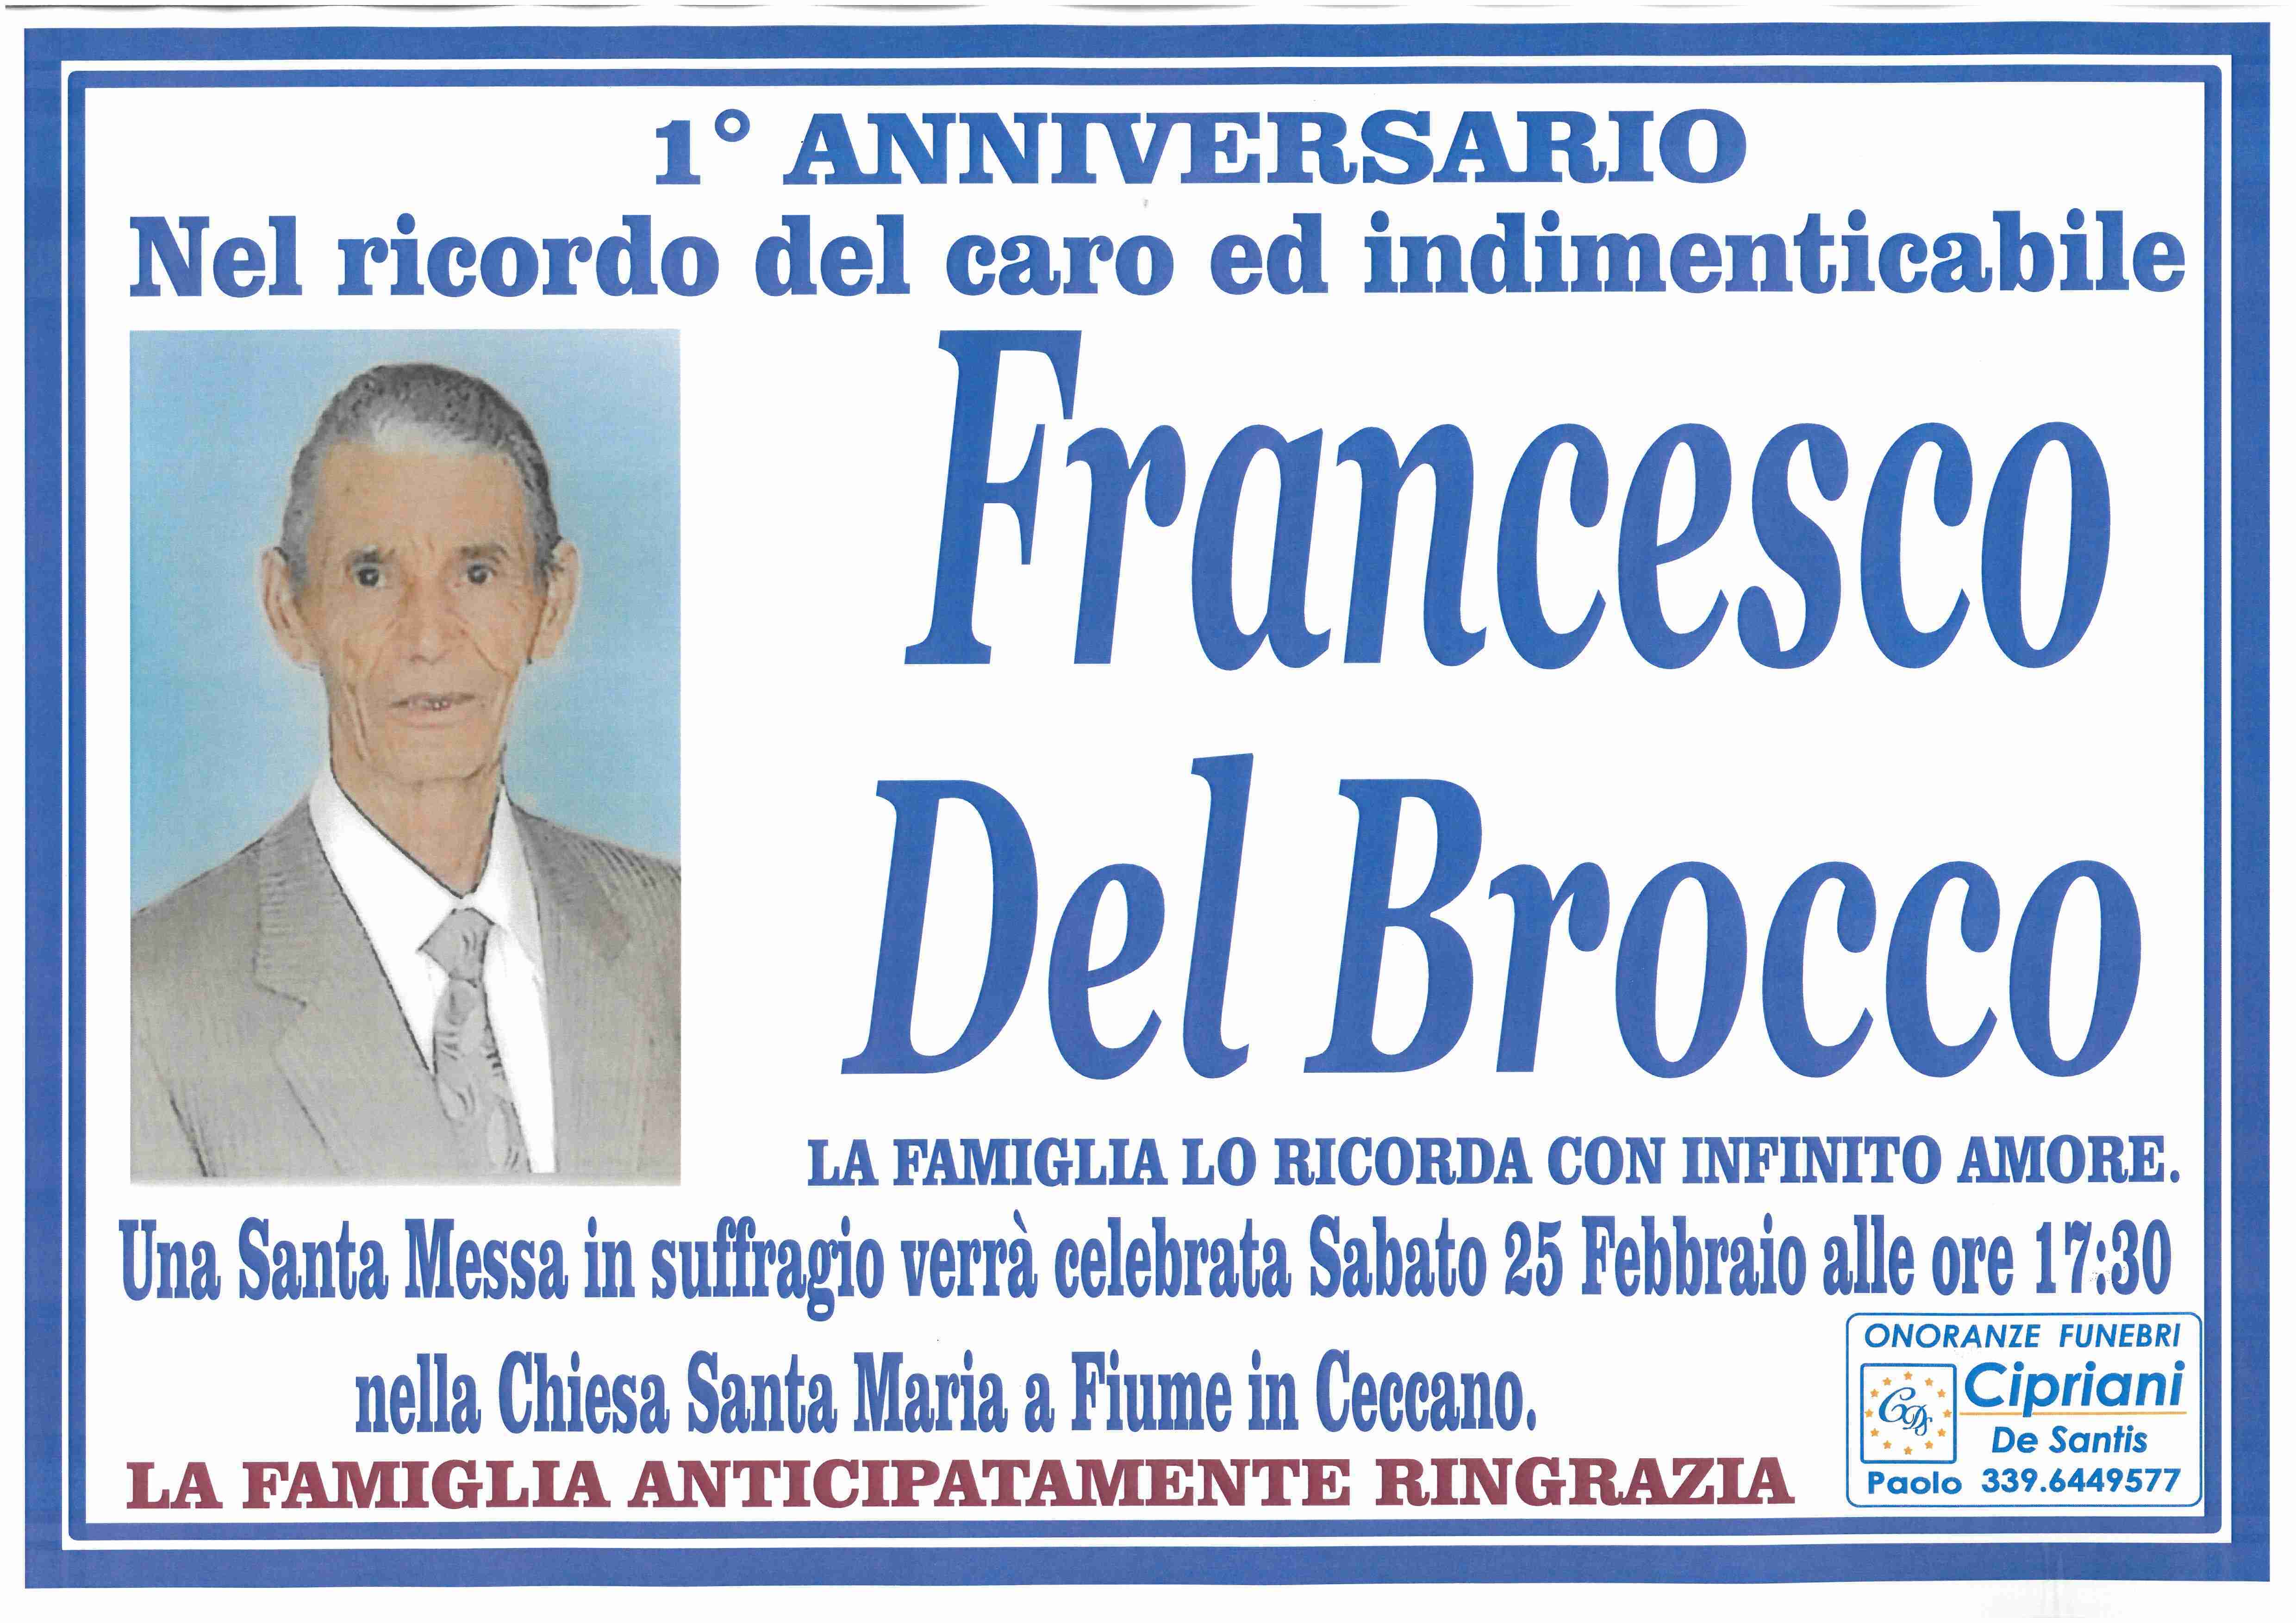 Francesco Del Brocco